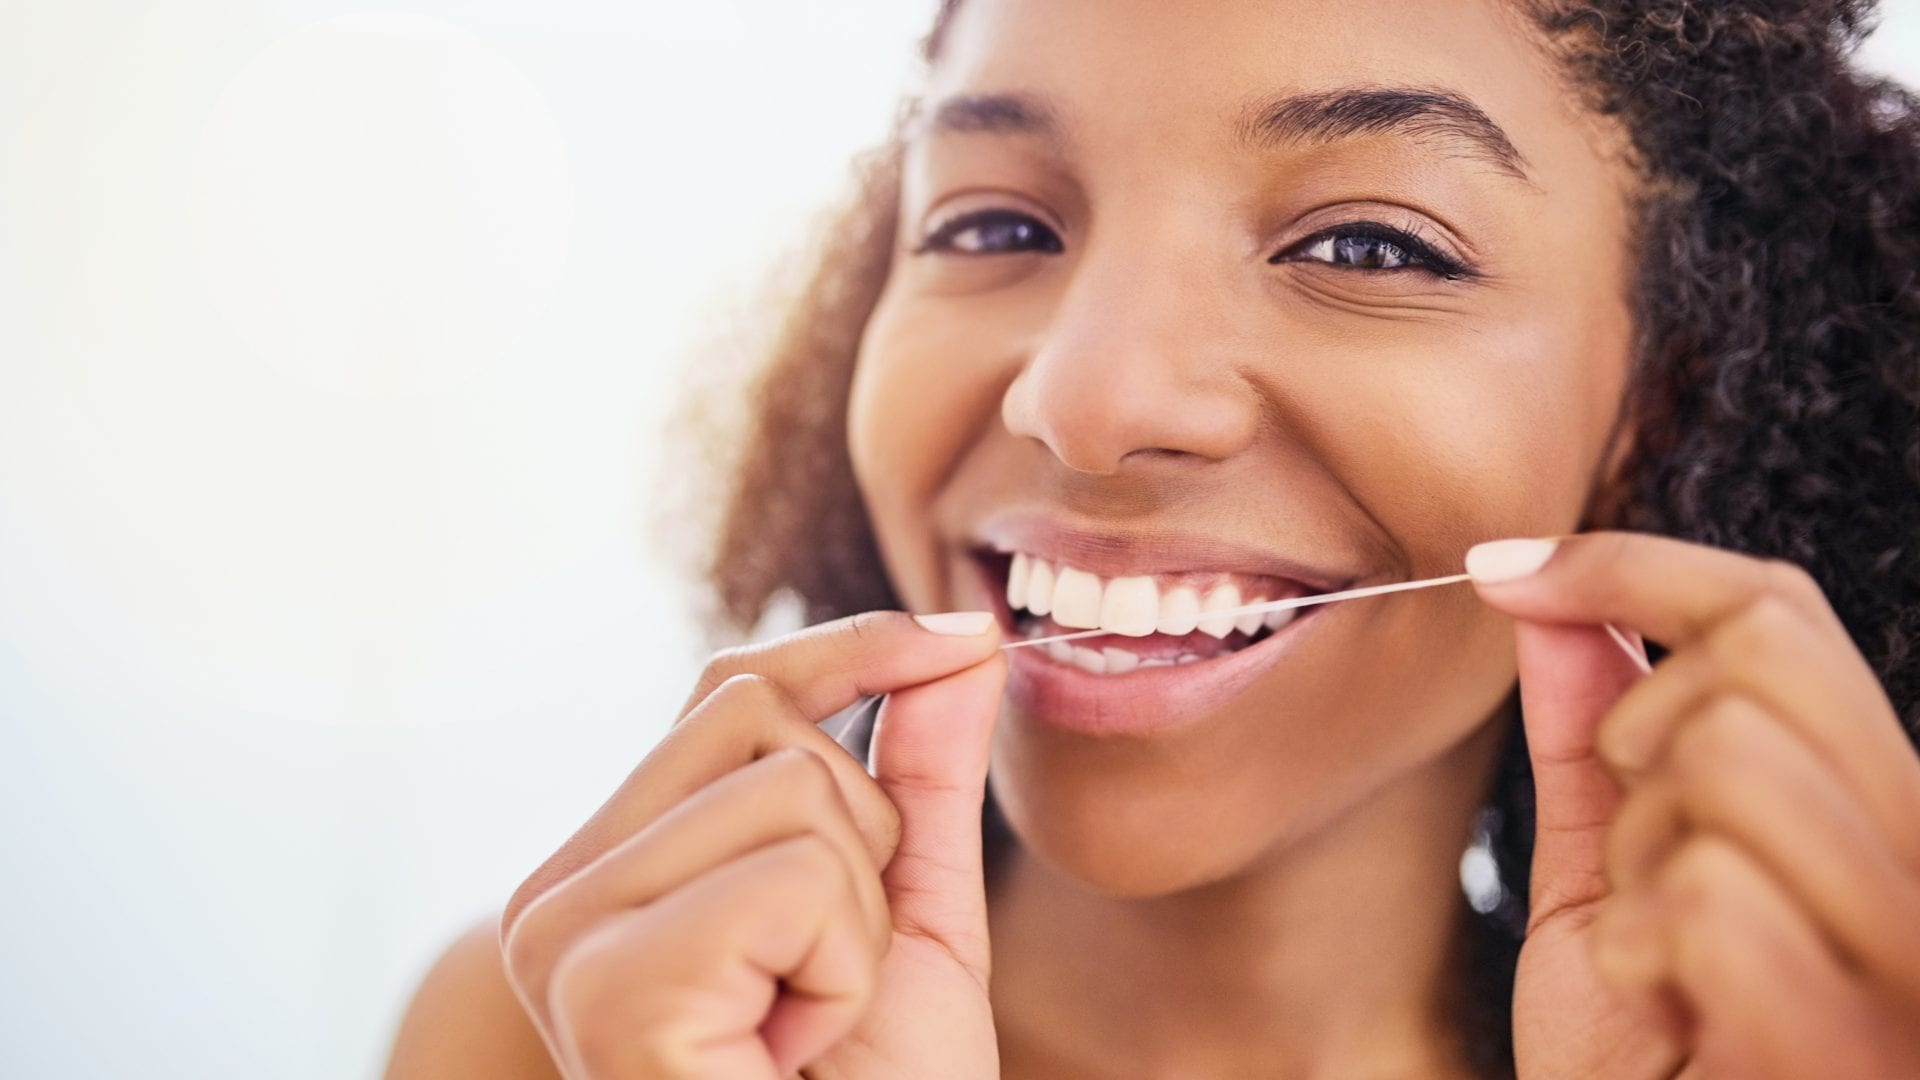 Dentes brancos- principais tratamentos de consultório e também caseiros